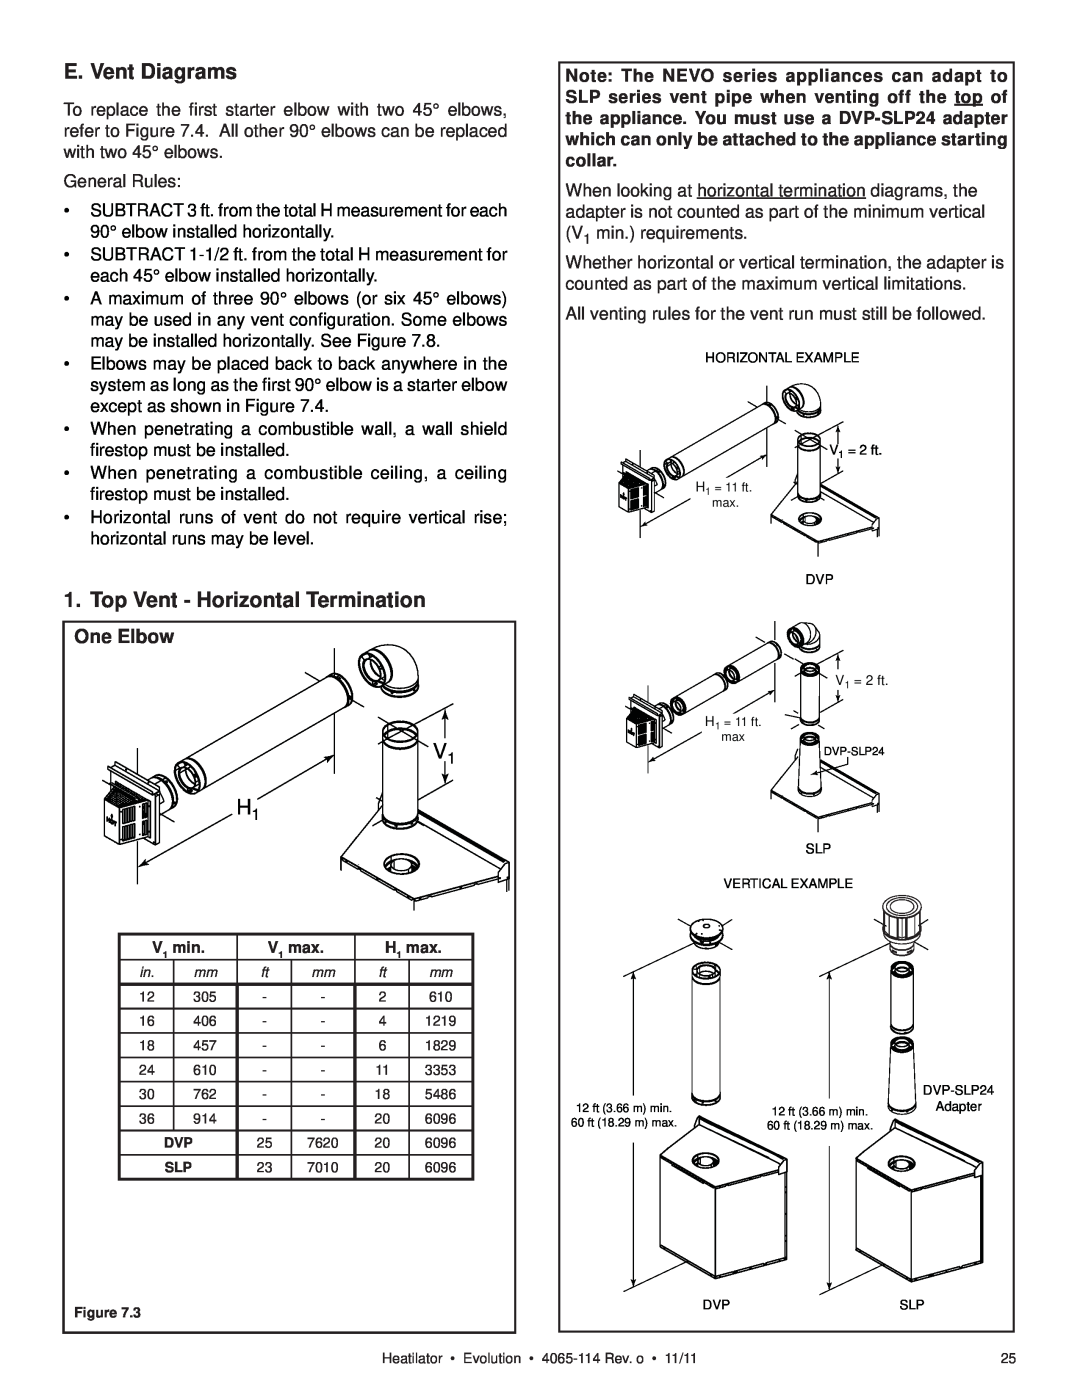 Heatiator NEVO4236I NEVO3630I owner manual E. Vent Diagrams, Top Vent - Horizontal Termination, V1 H1, One Elbow 